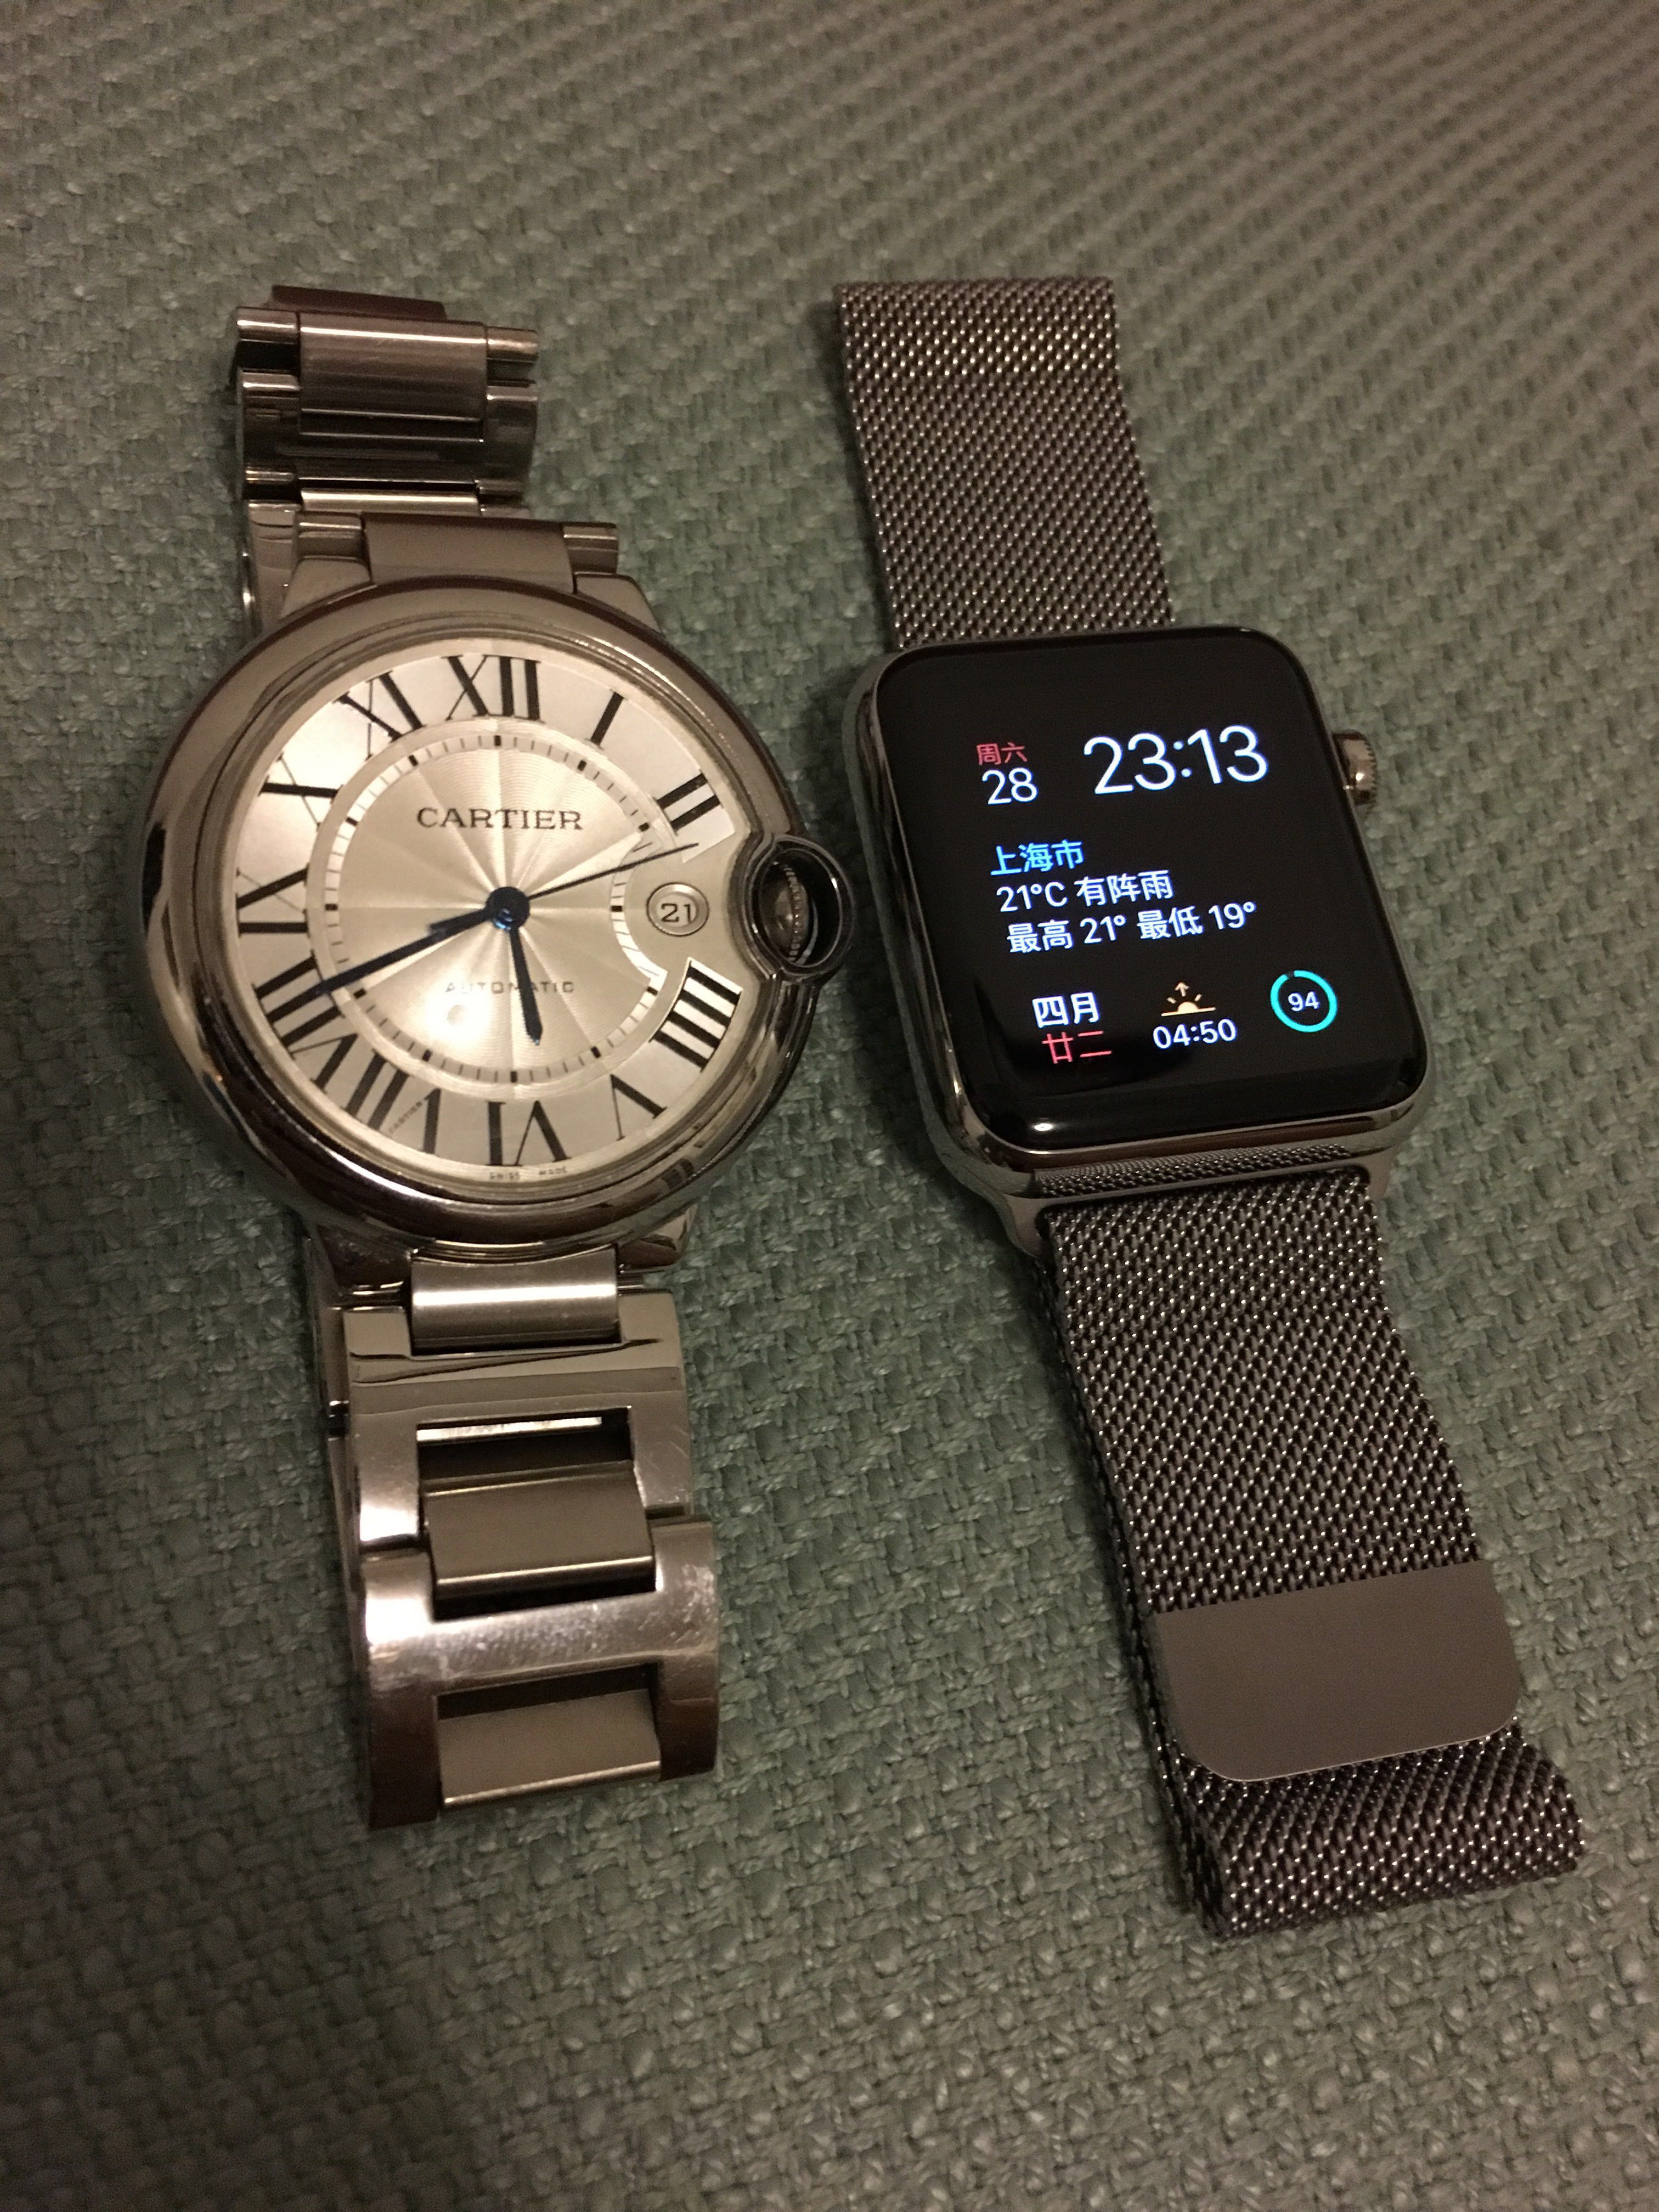 [iPhone]闲鱼上的apple手表,只有新的一半价格